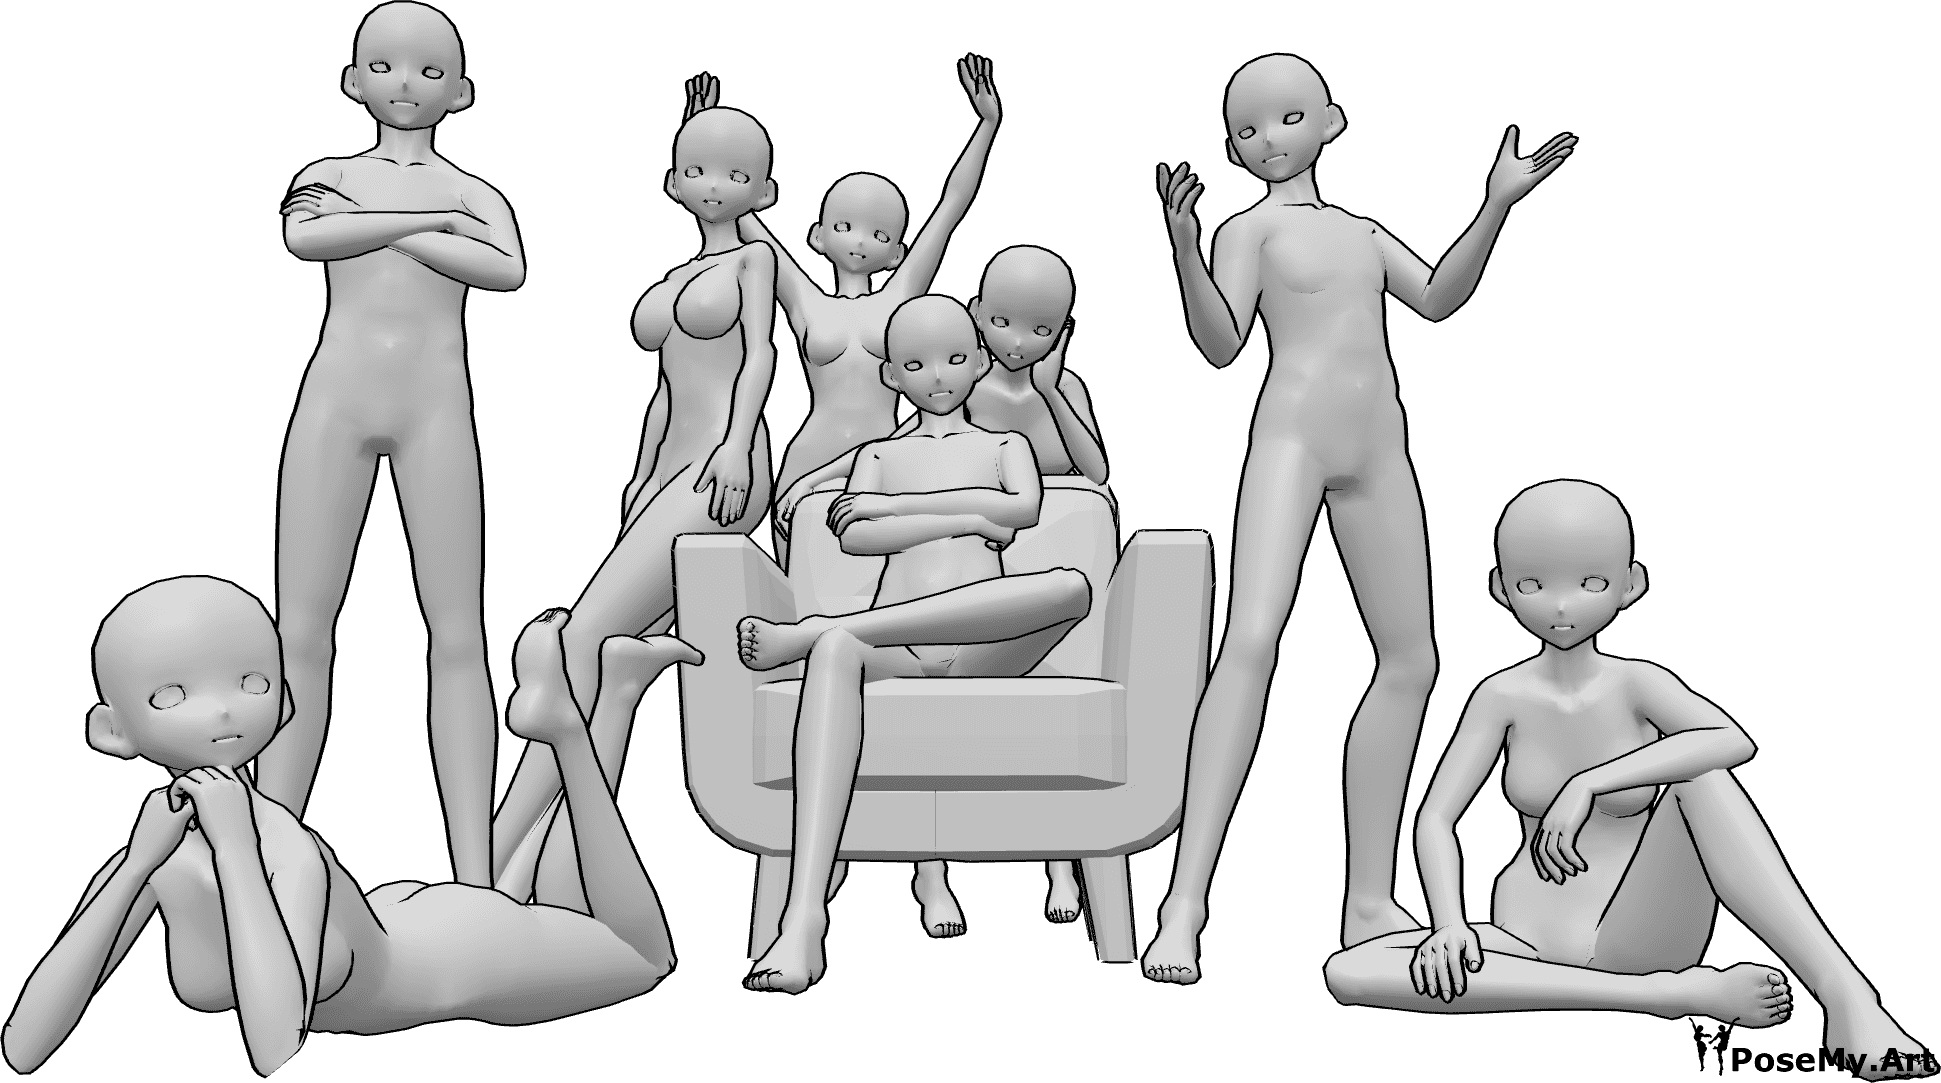 Referencia de poses- Foto de grupo anime - Grupo de ocho mujeres y hombres anime posan para una foto de grupo, sentados y de pie.